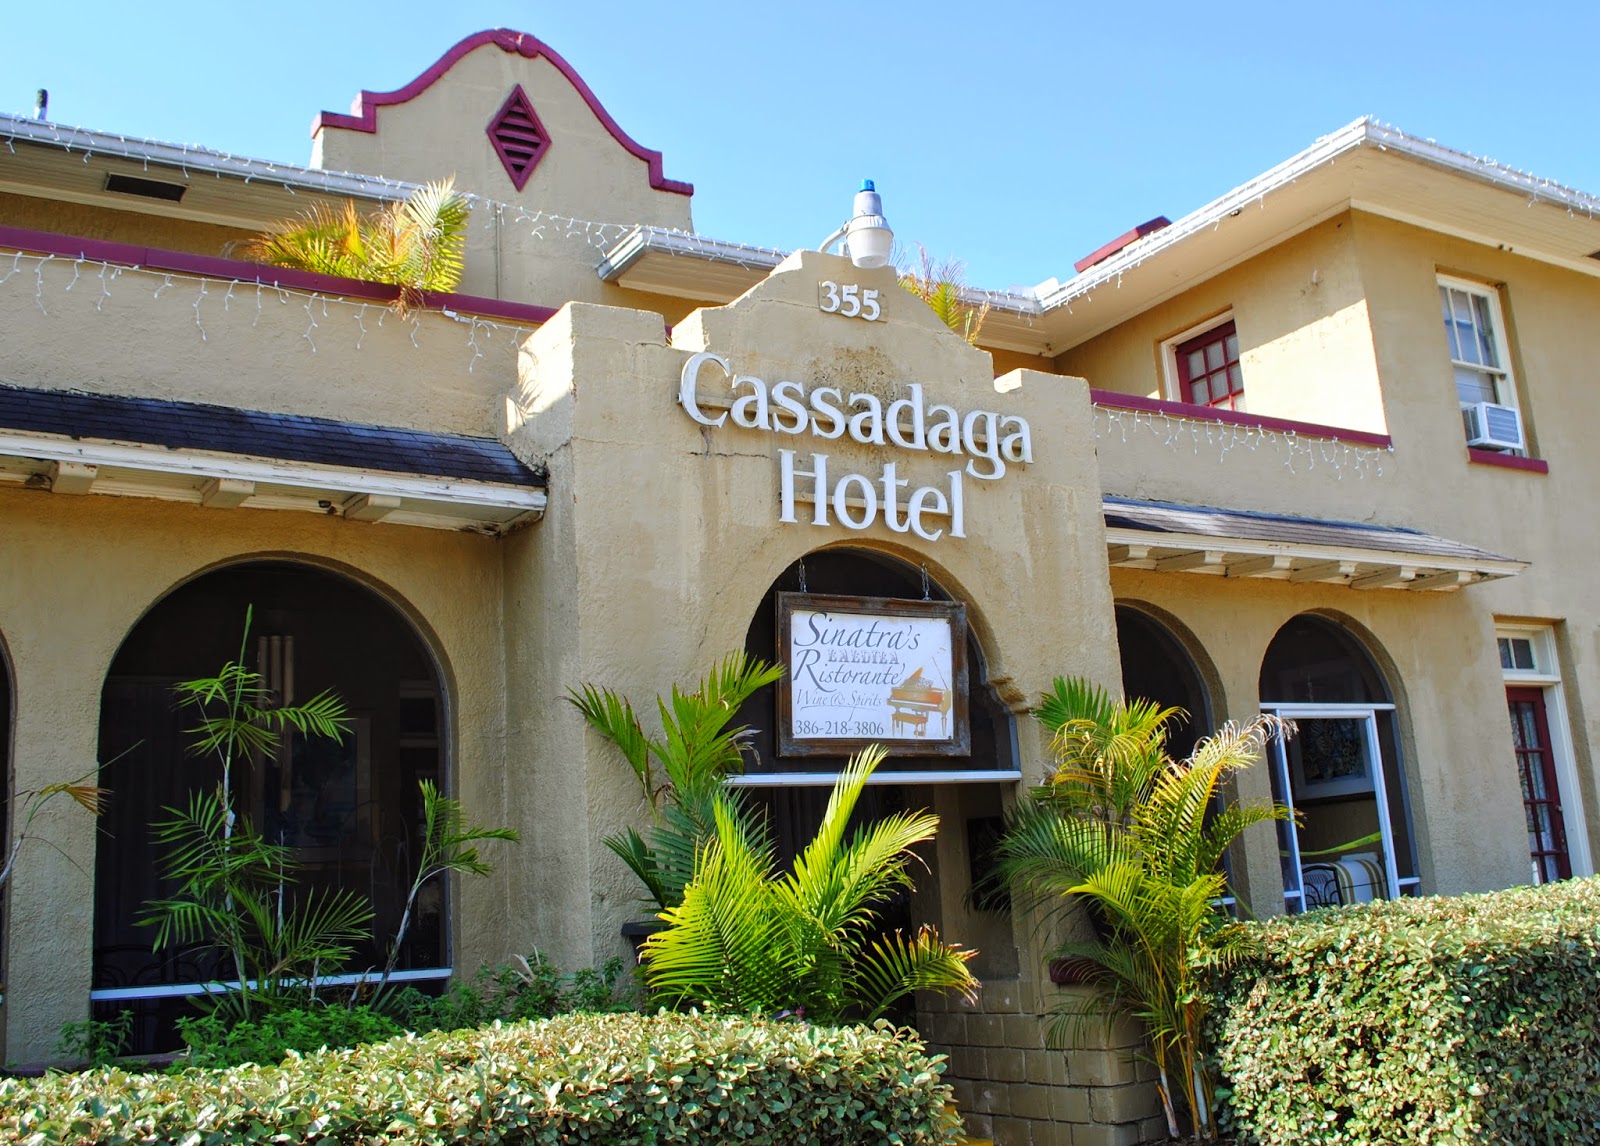 The Cassadaga Hotel